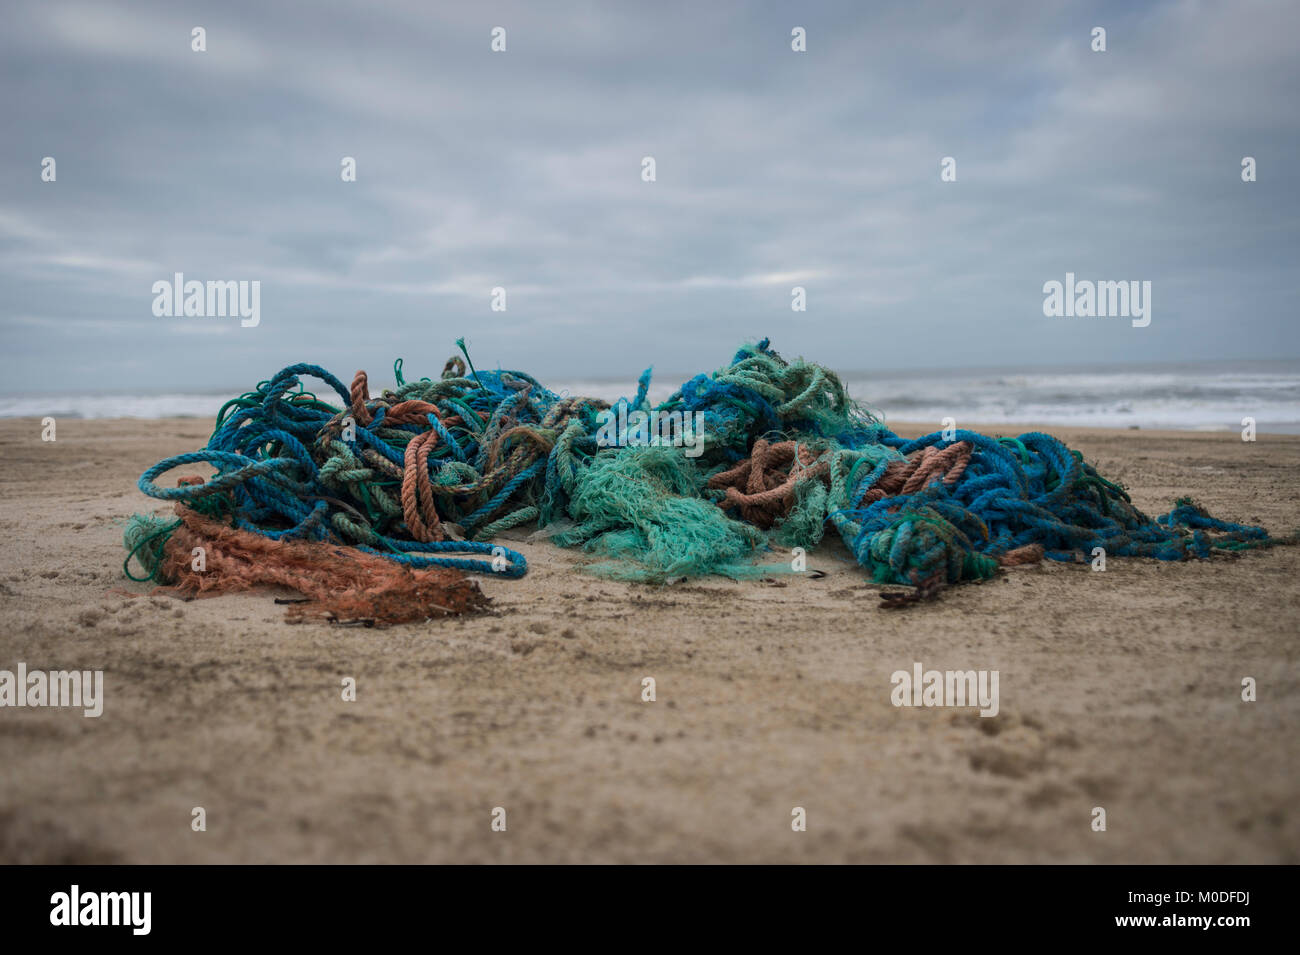 Un groviglio di materiale plastico sintetico le funi di pesca lavato fino sulla spiaggia. Il danno ambientale. Foto Stock